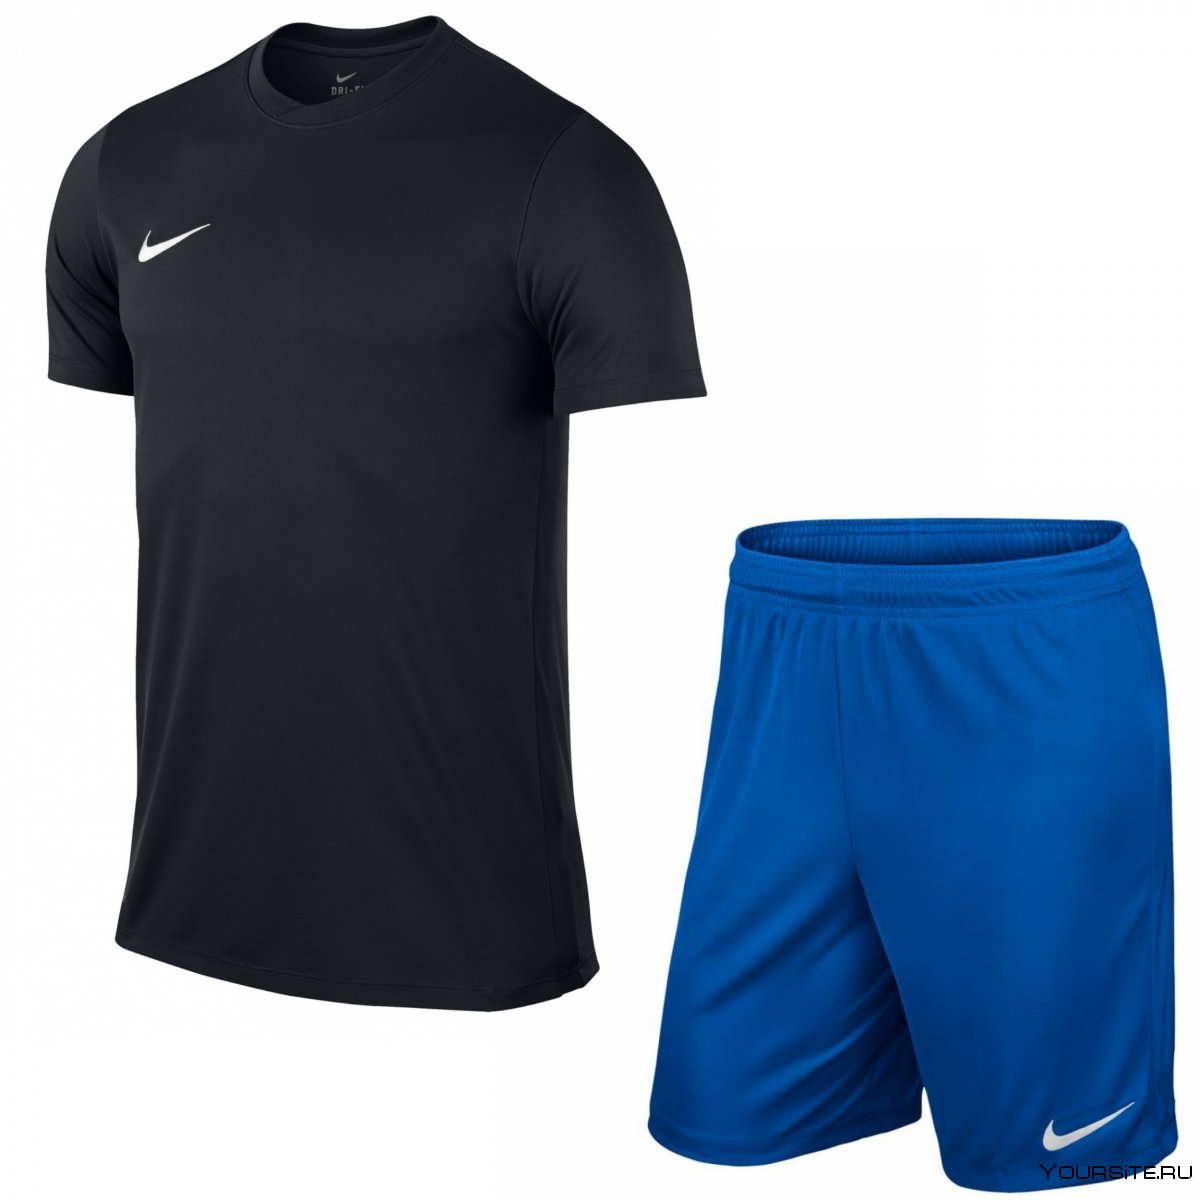 Futbol Nike футболка шорты